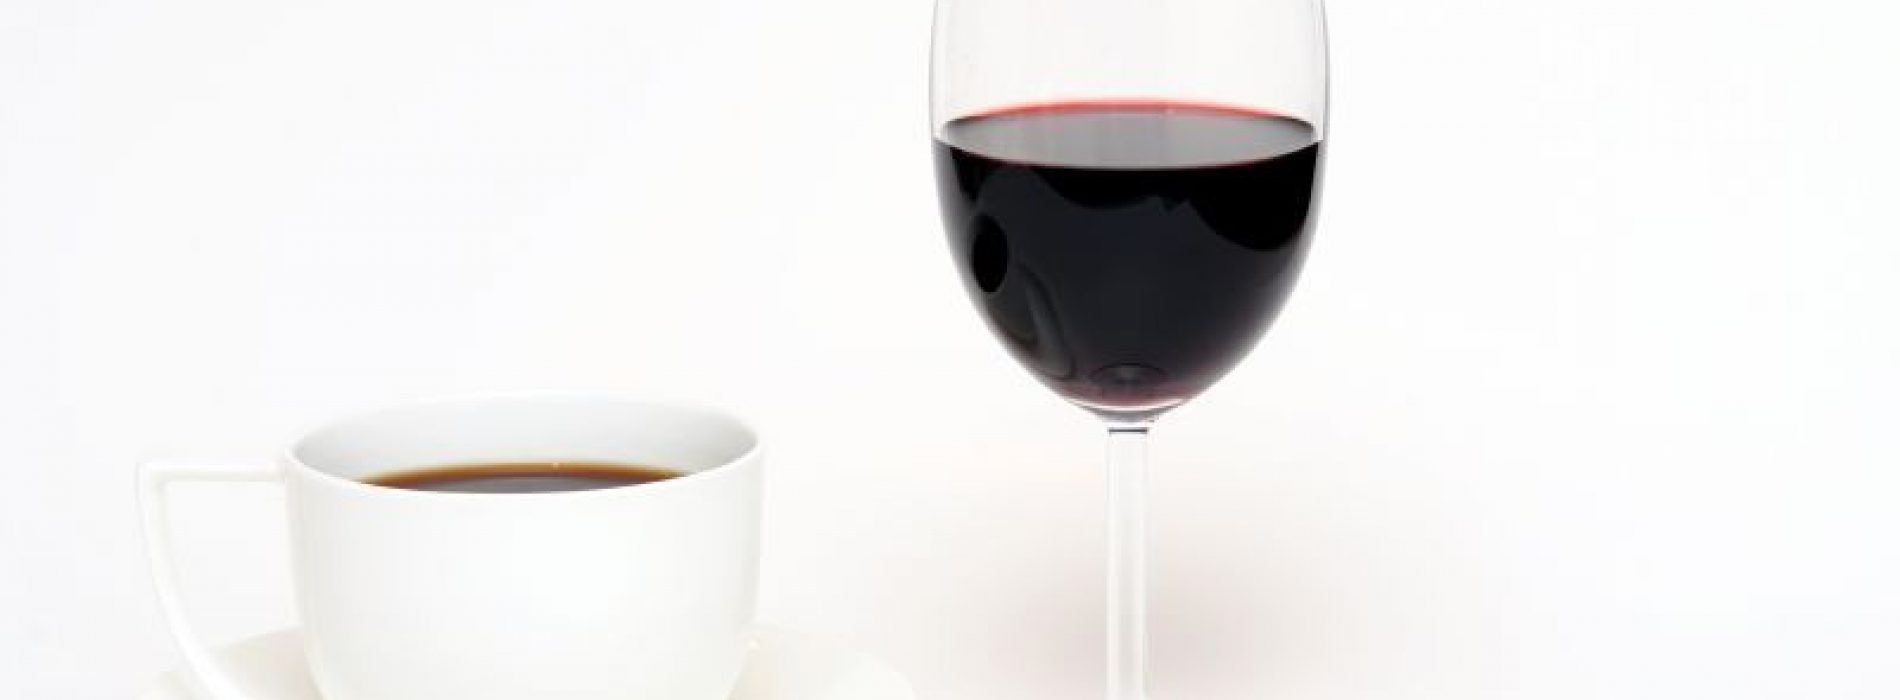 Goed voor de darmen: wijn en koffie